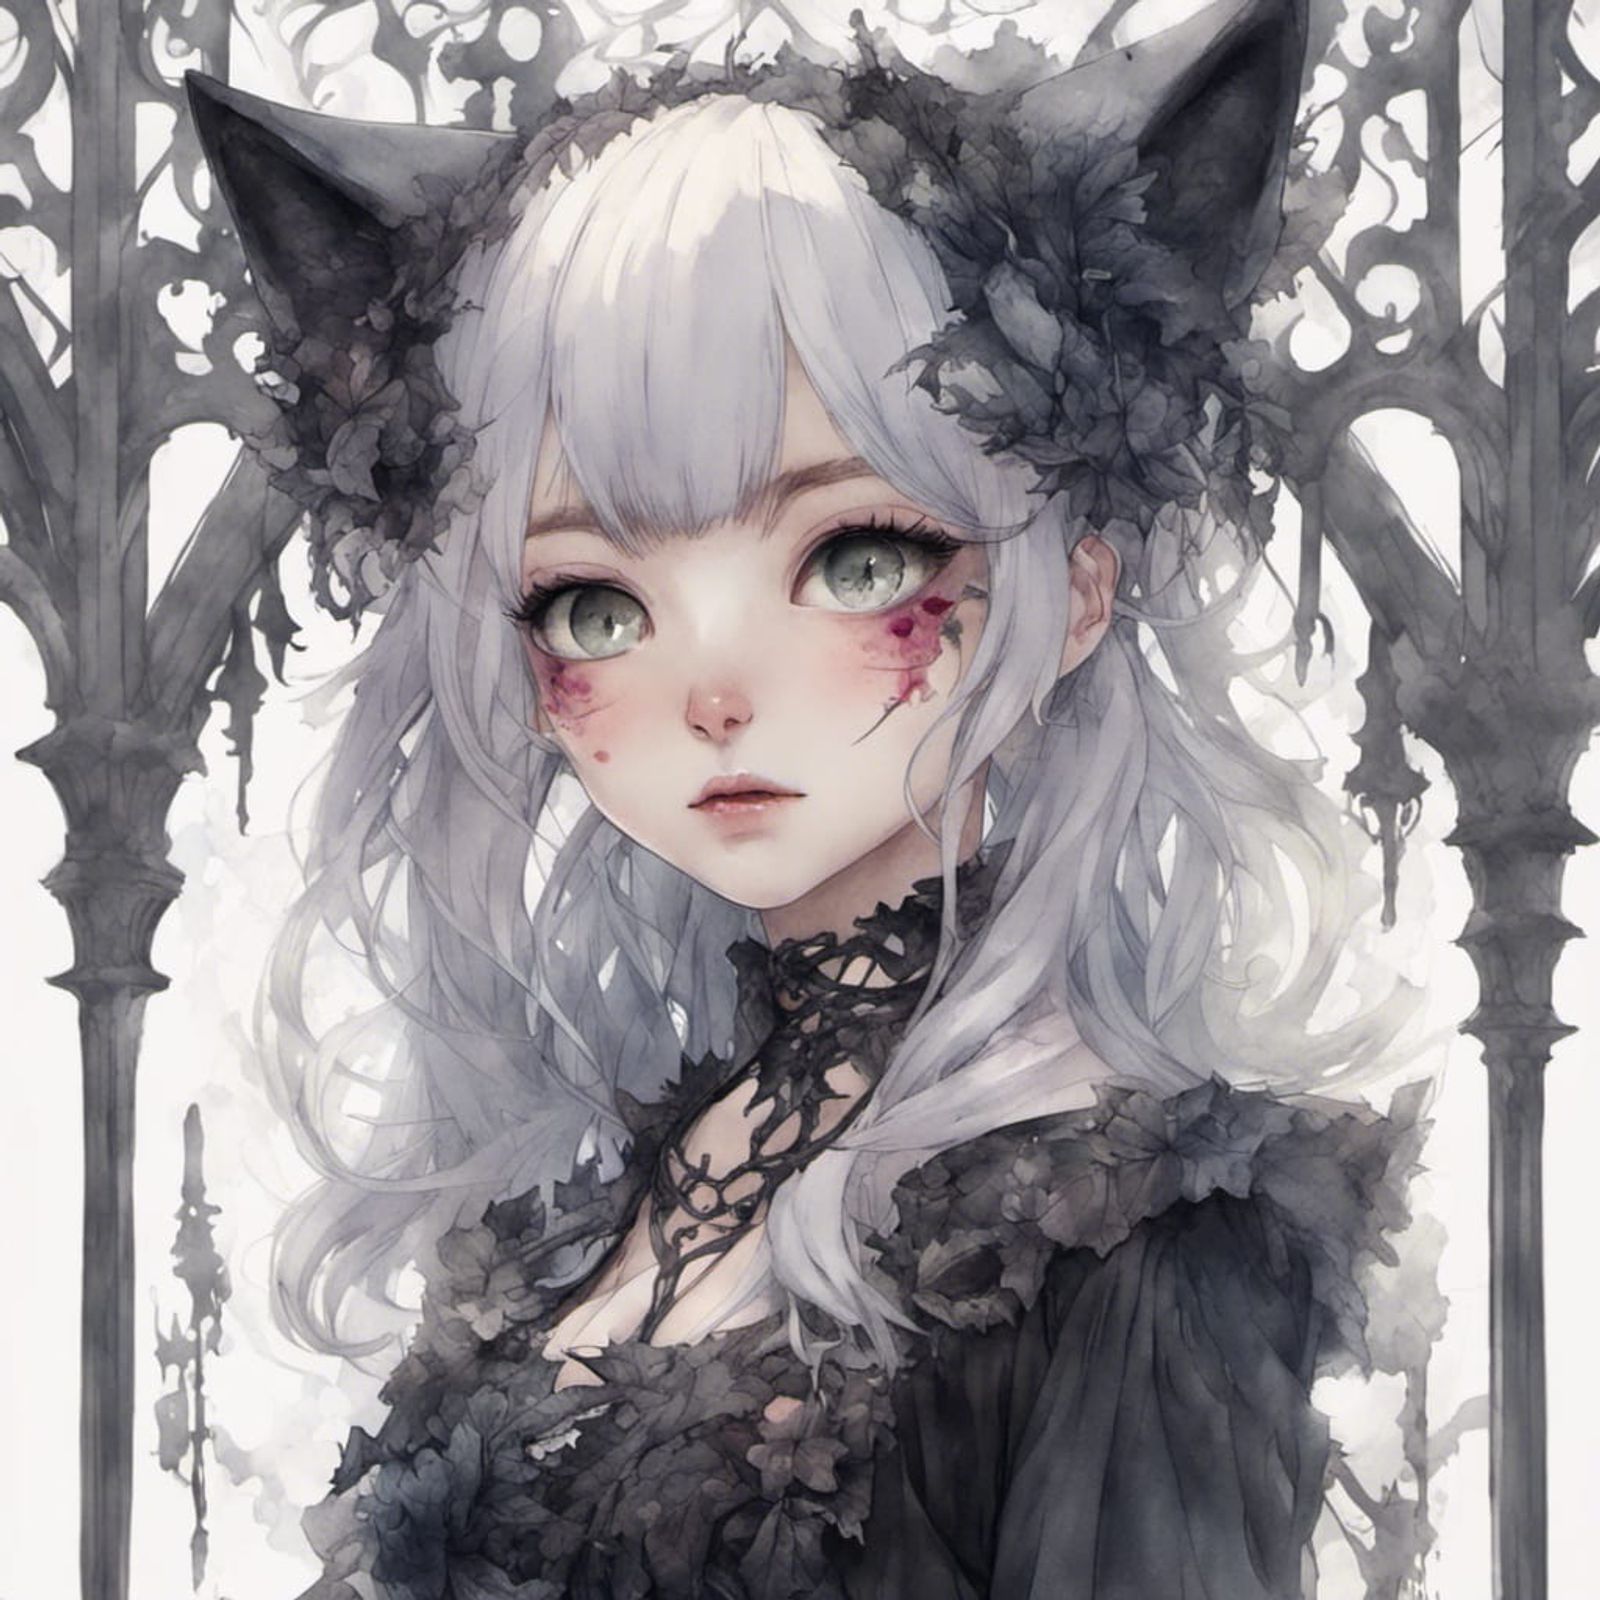 manga girl with wolf ears